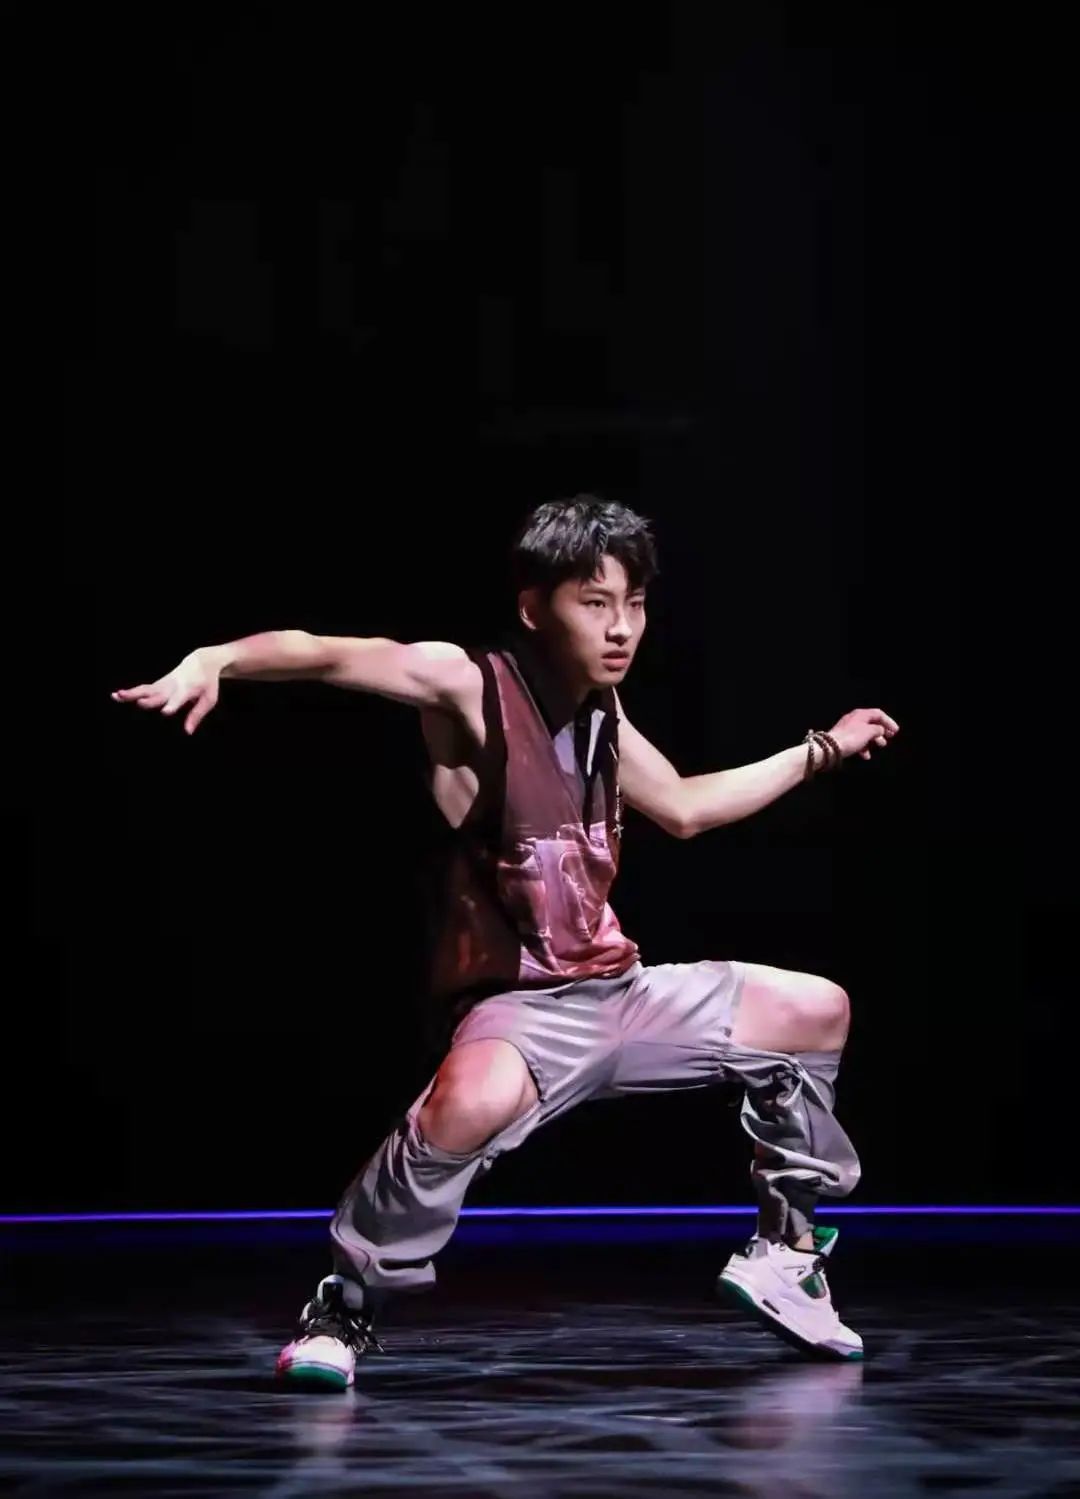 李俊昊跳舞图片